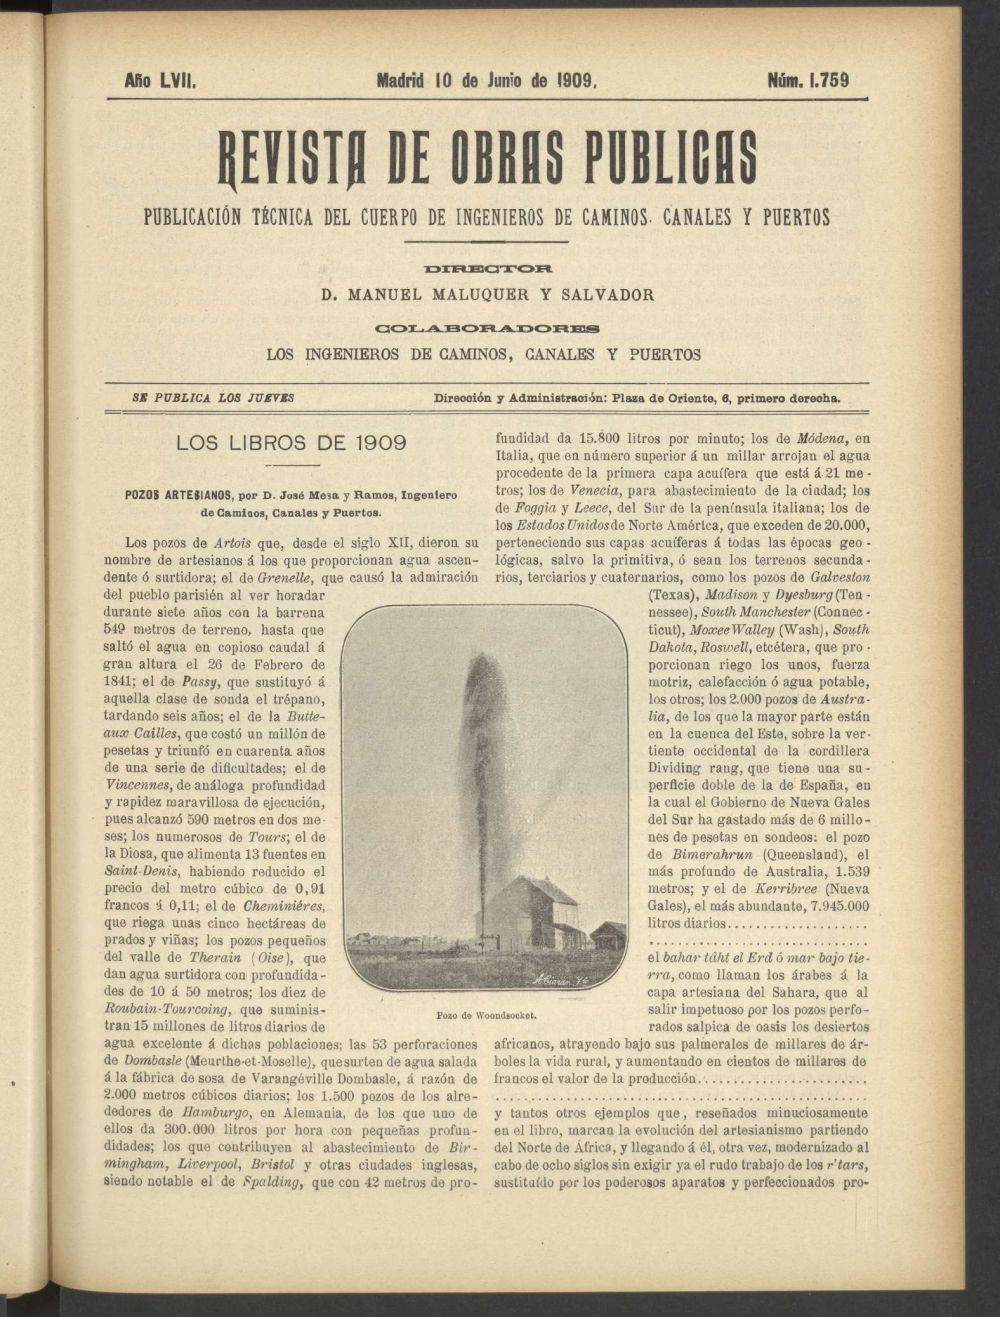 Revista de obras pblicas del 10 de junio de 1909